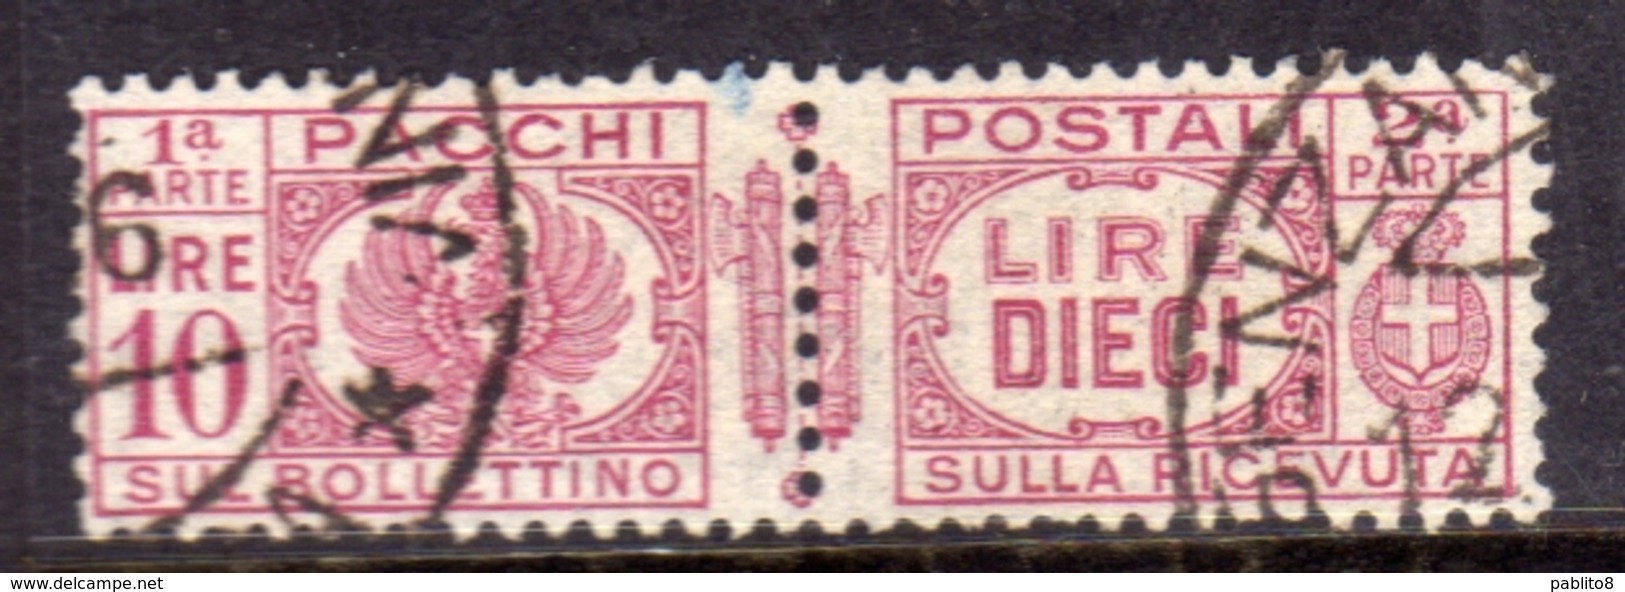 ITALIA REGNO ITALY KINGDOM 1927 - 1932 PACCHI POSTALI FASCI PARCEL POST LIRE 10 USATO USED OBLITERE' - Pacchi Postali